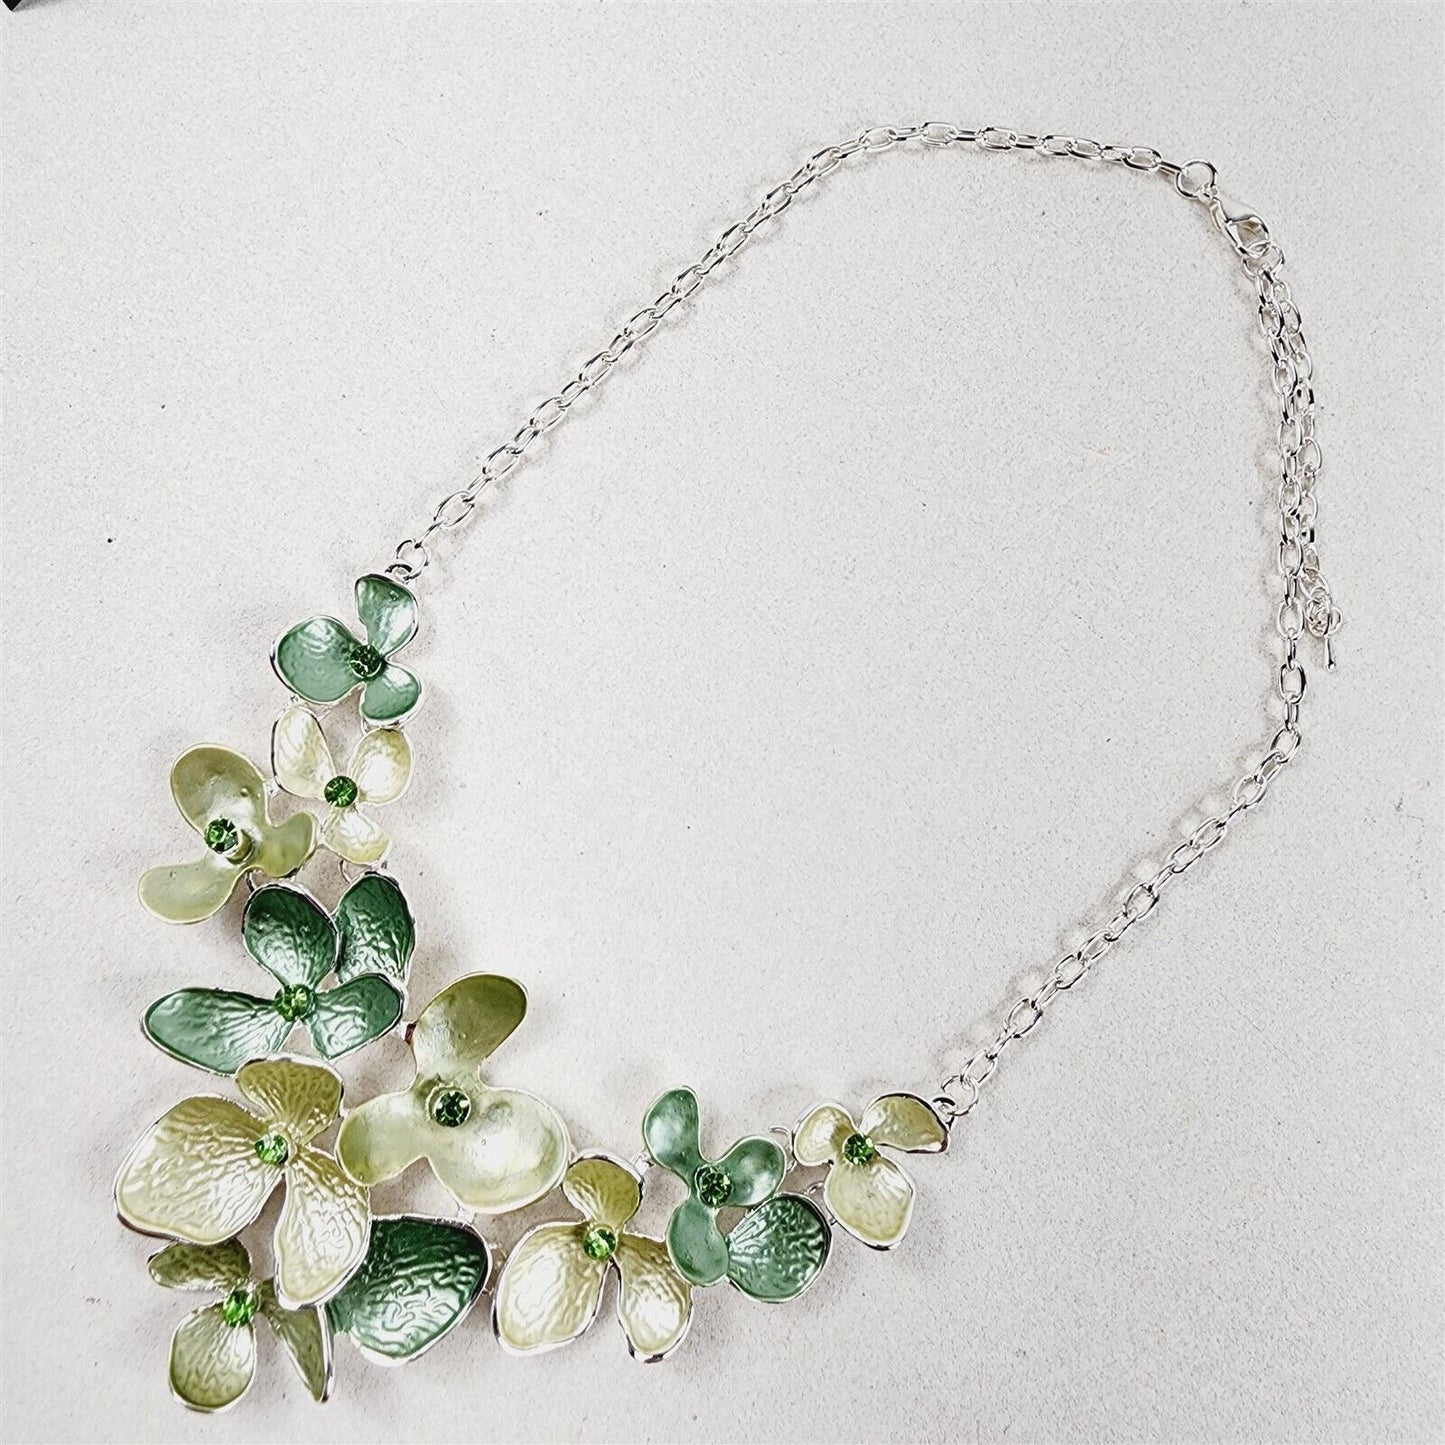 Green Enamel Floral Rhinestone Necklace Earrings Fashion Jewelry Set